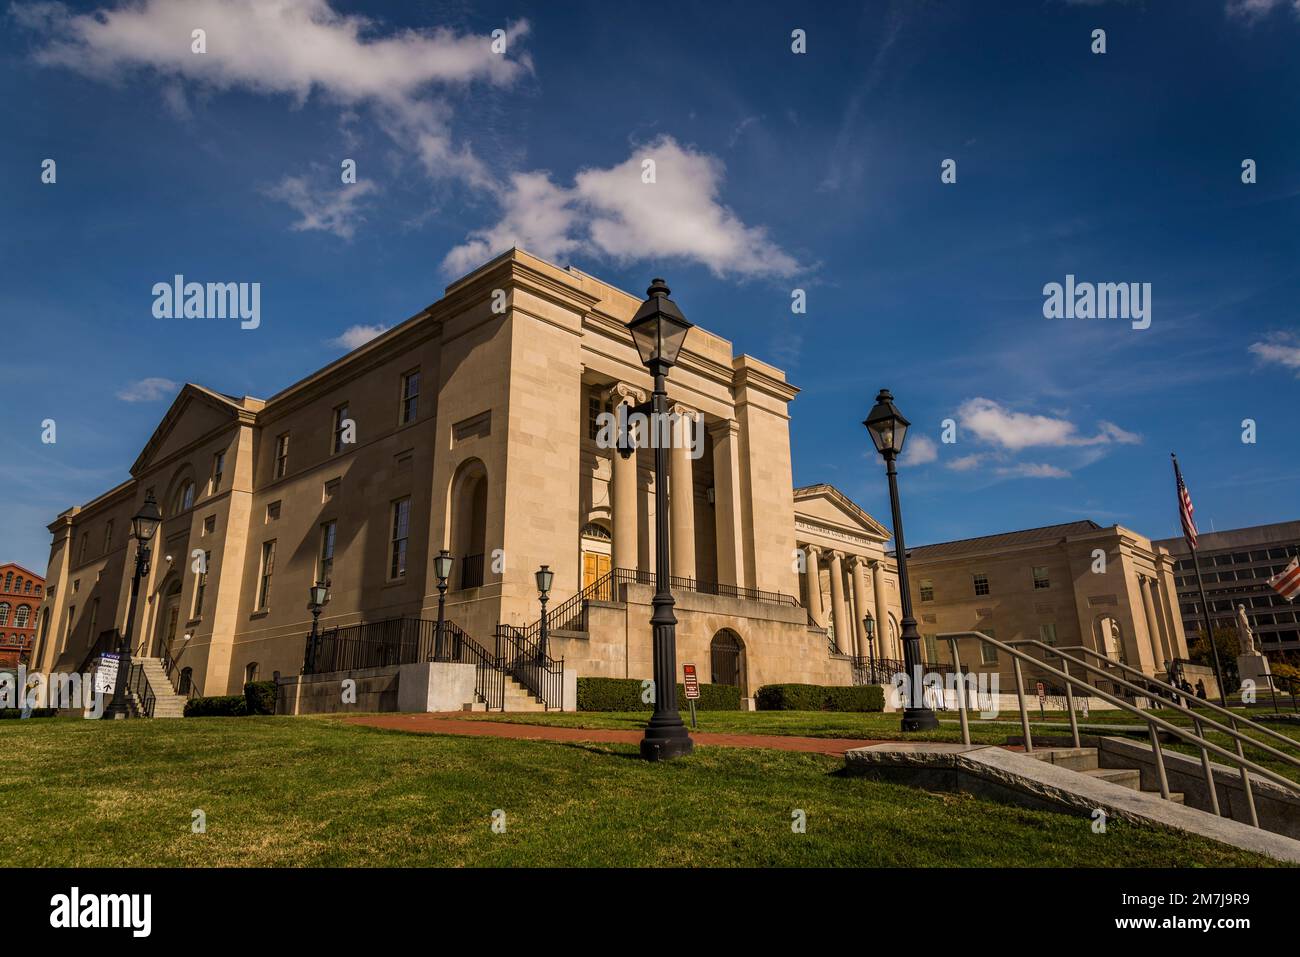 La Cour d'appel du district de Columbia, située dans l'ancien D.C. Hôtel de ville, un site historique national, Washington, D.C., États-Unis Banque D'Images